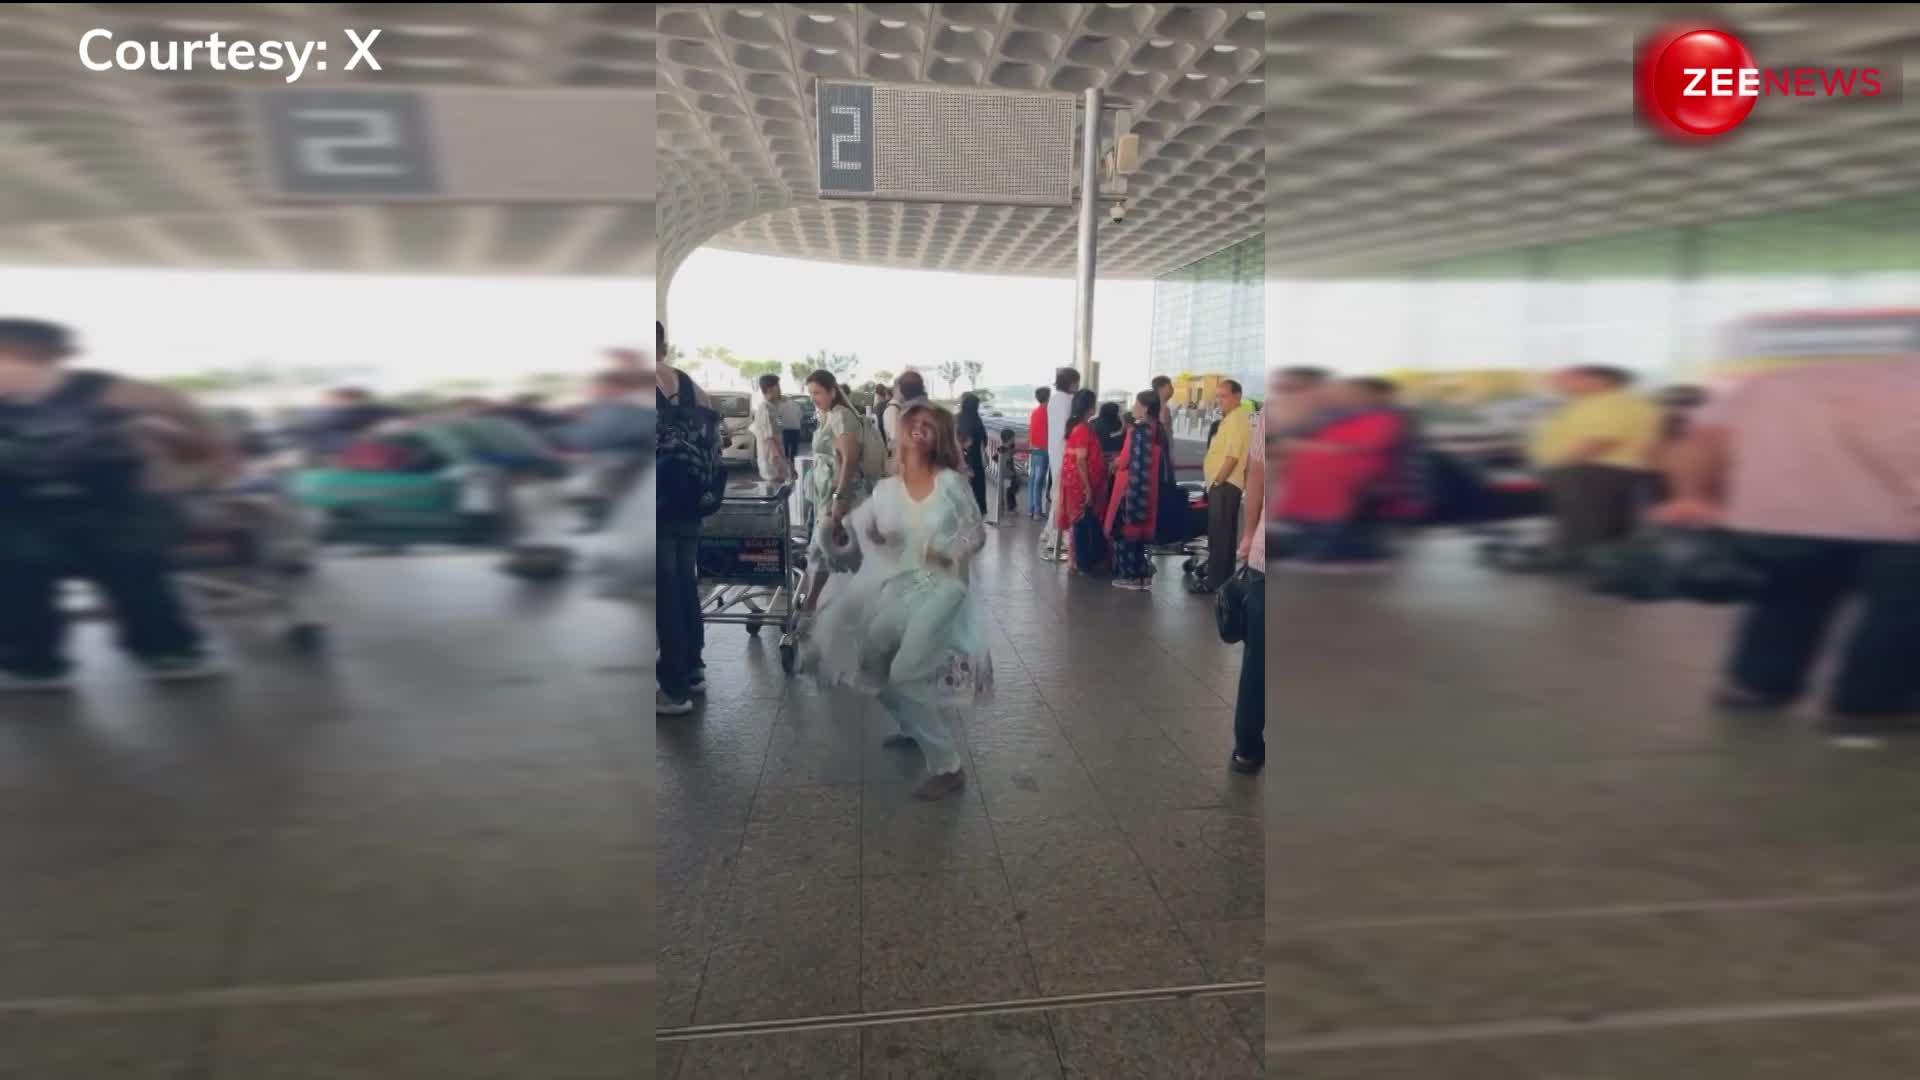 हे भगवान! मेट्रो और ट्रेन के बाद एयरपोर्ट में भी घुस गया रील का कीड़ा, दीदी ने कर दिया ऐसा डांस की लोगों का आ गया गुस्सा